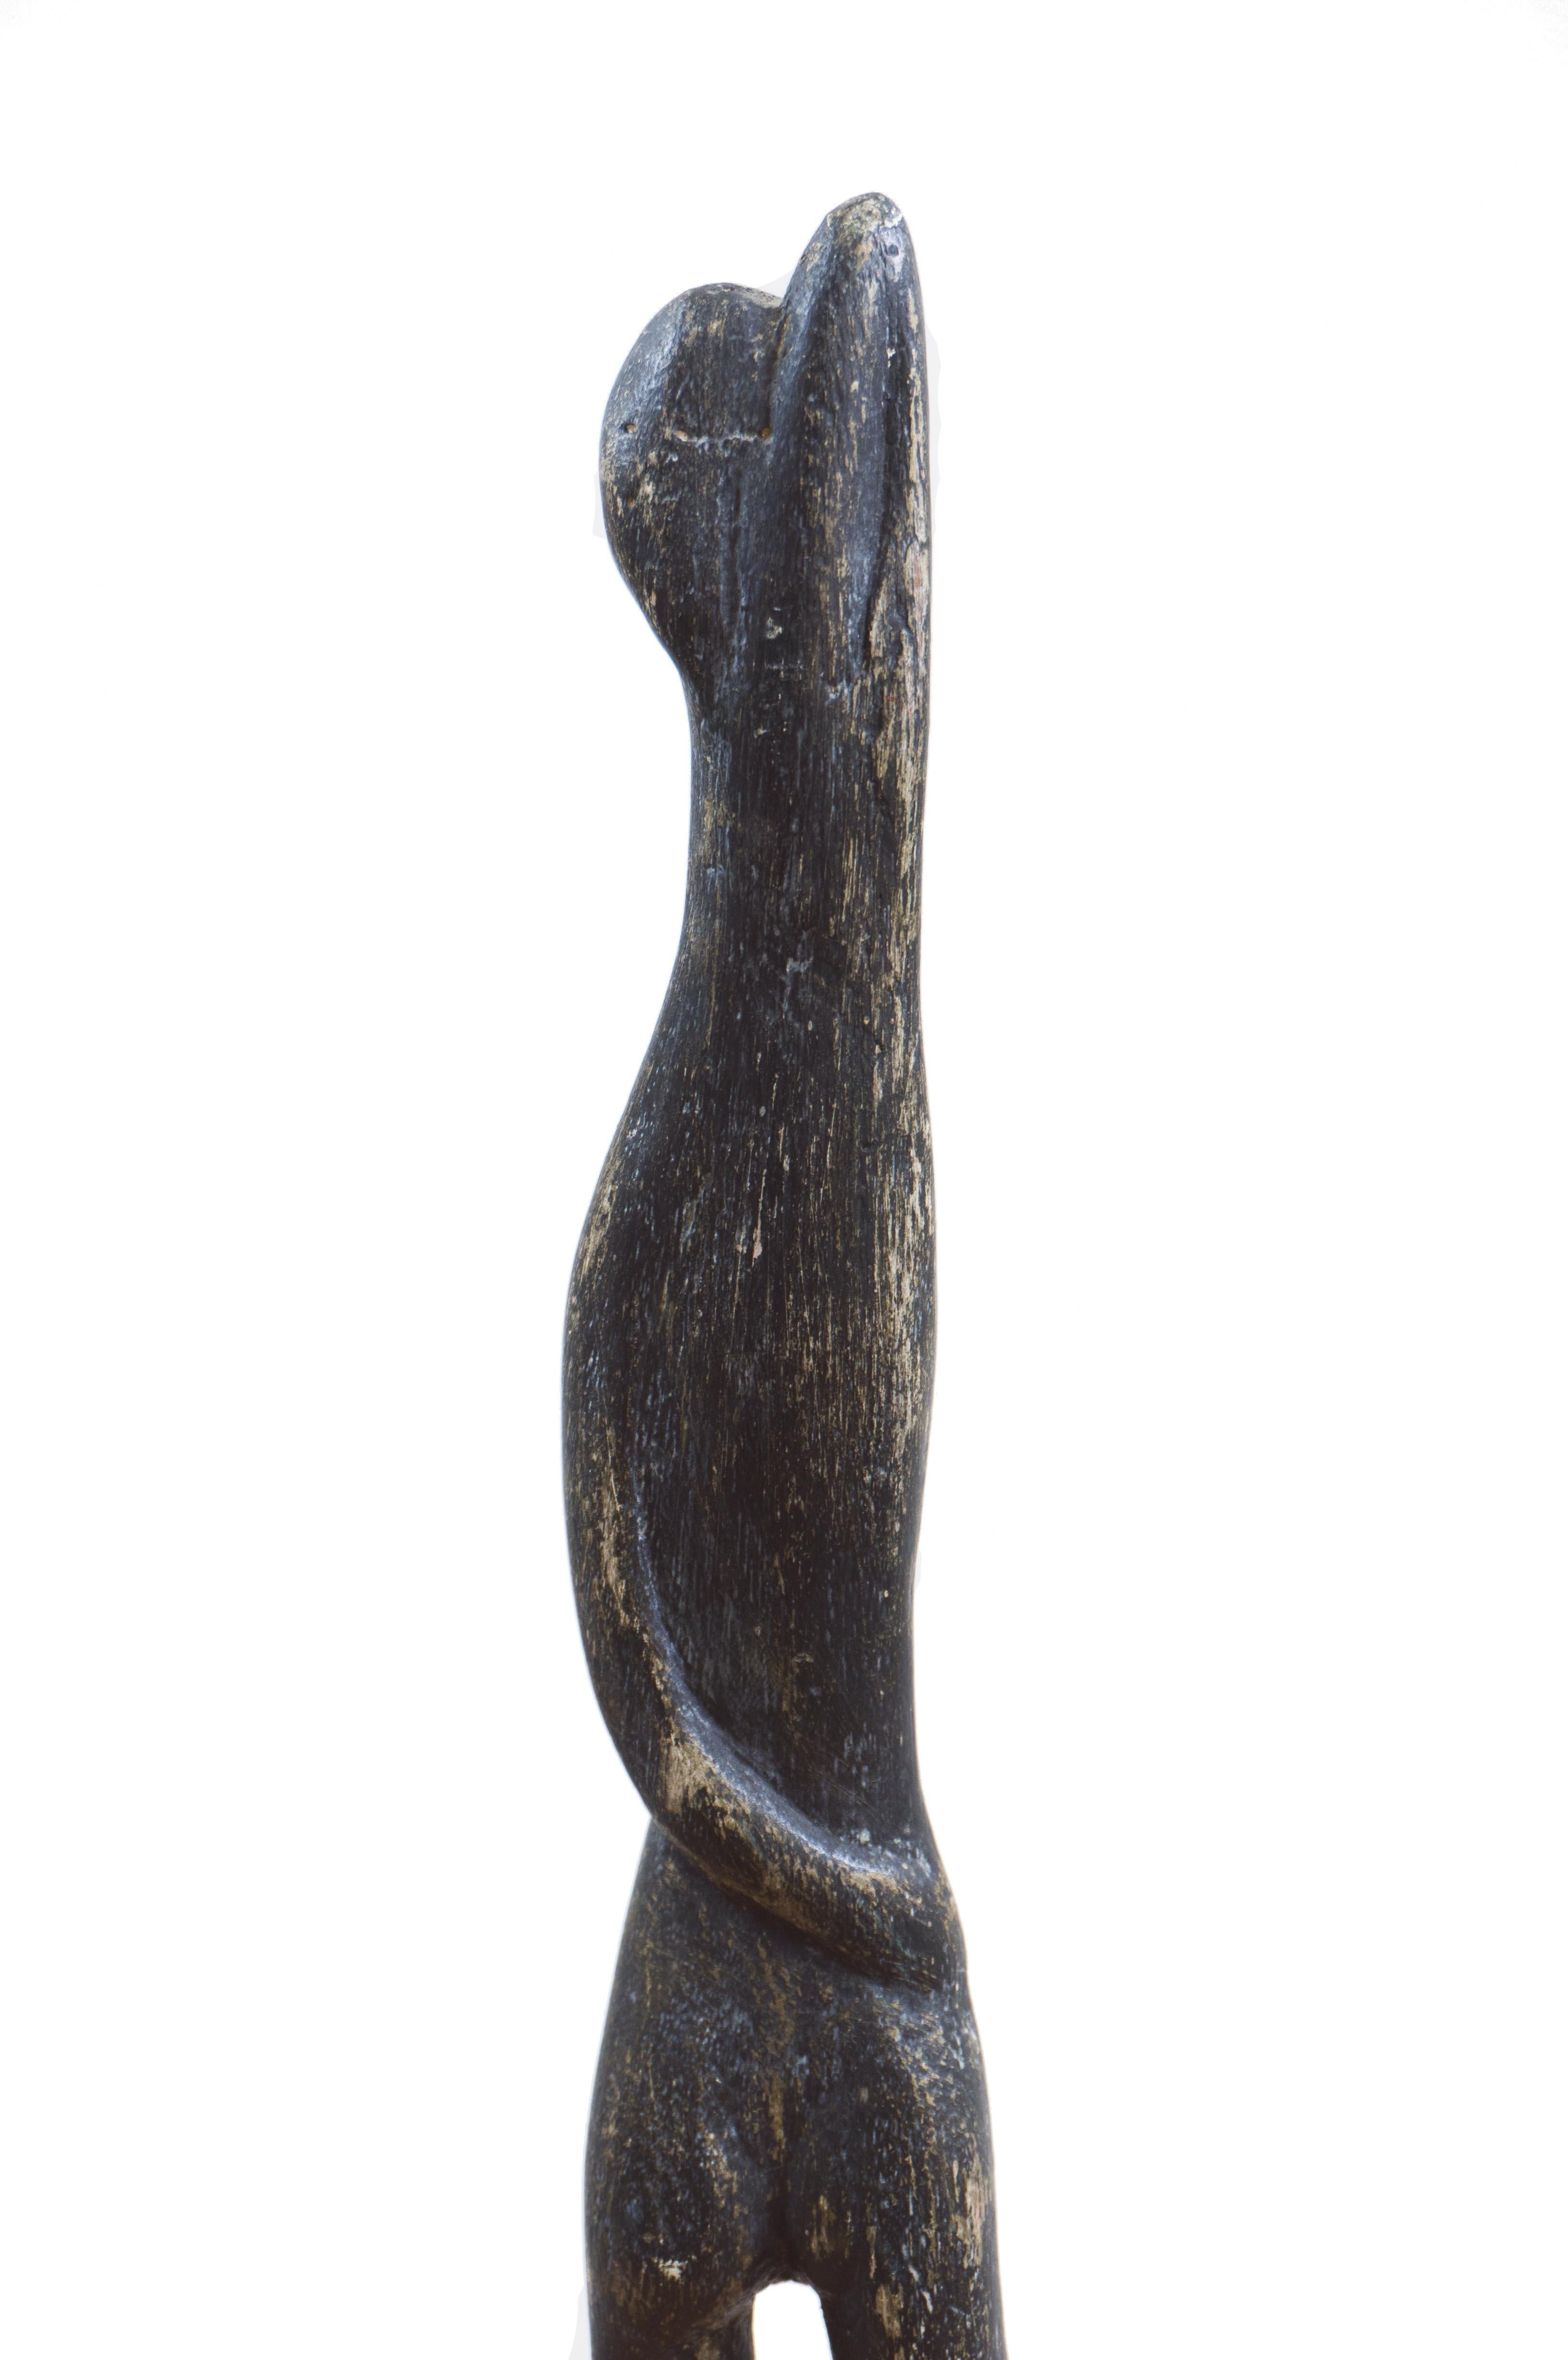  « Femme debout », sculpture moderniste, région de la baie de San Francisco, de Young Museum - Moderne Sculpture par Wedo Georgetti